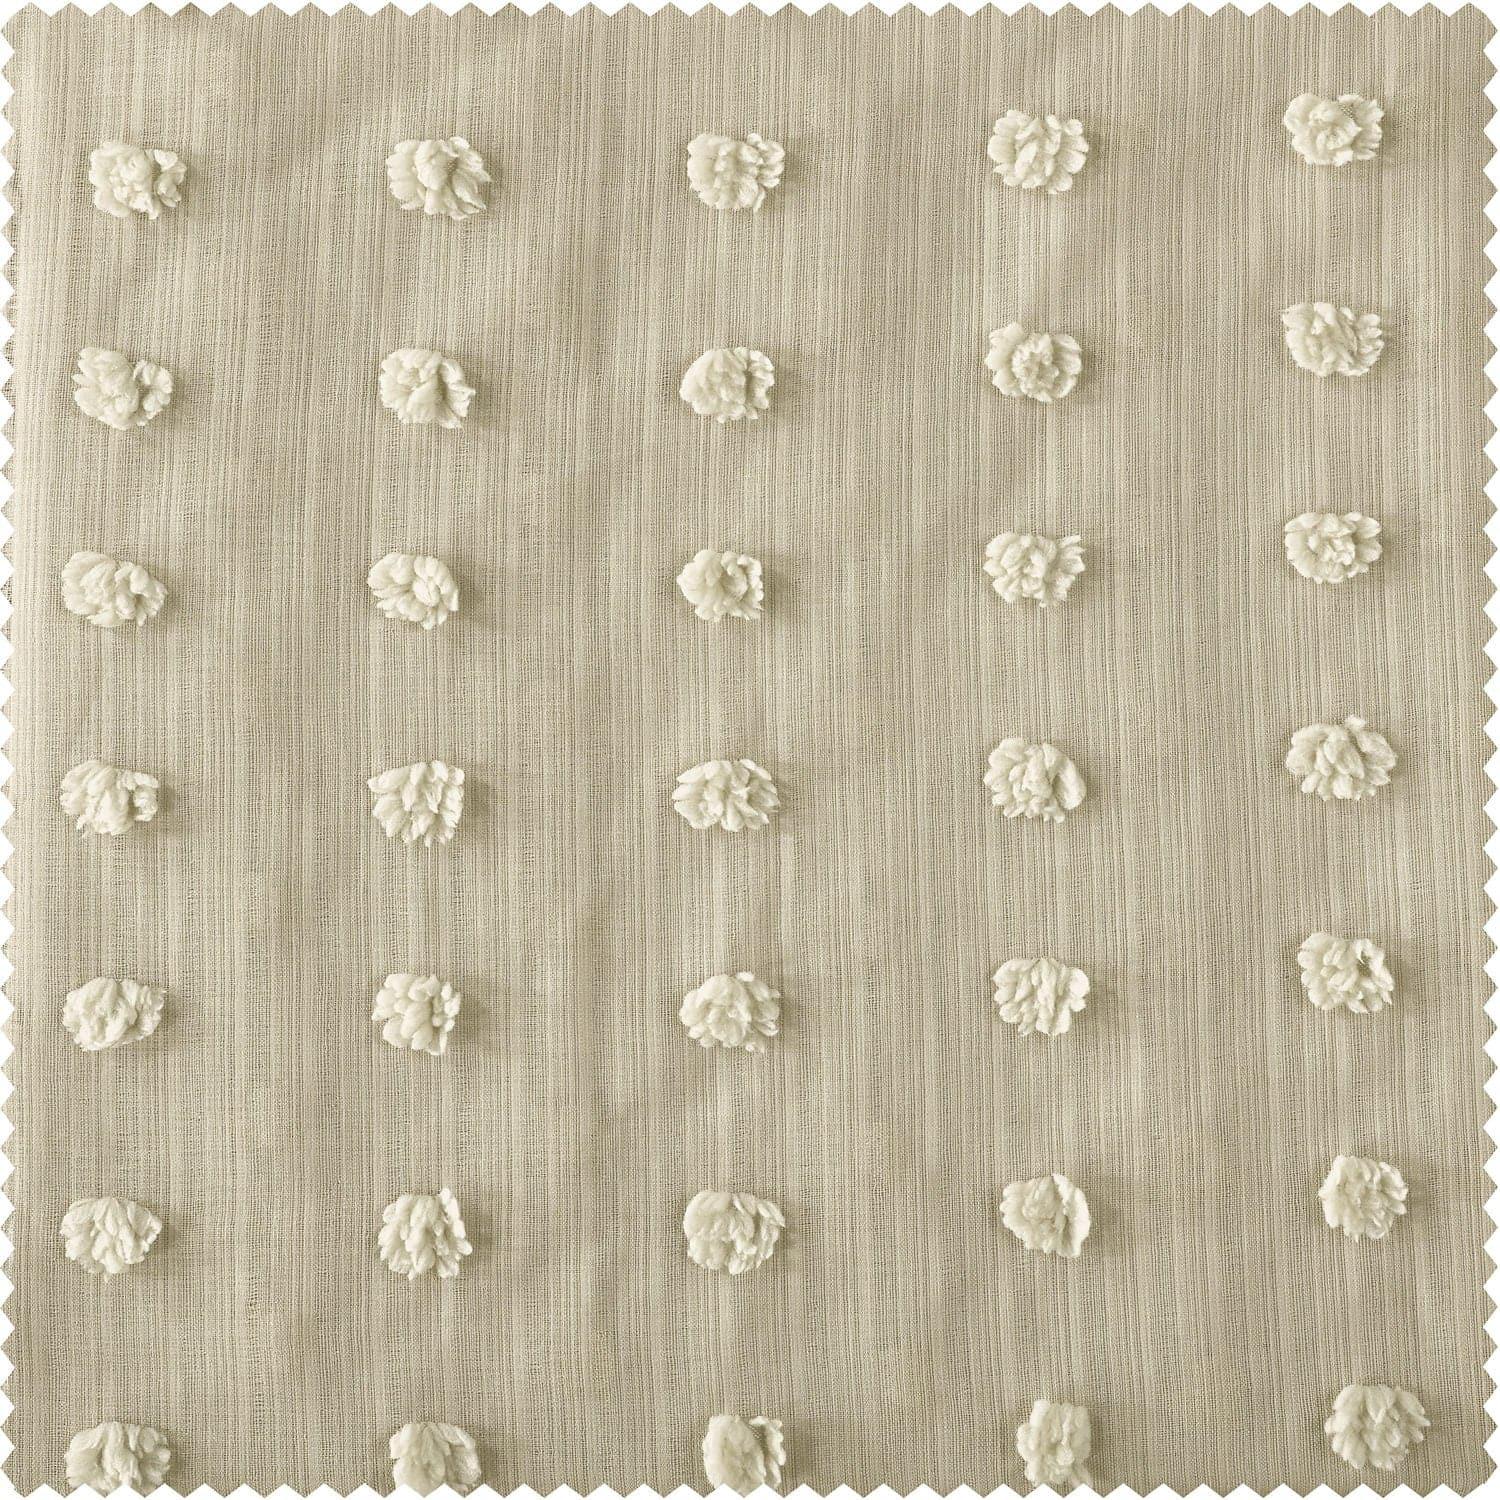 Strasbourg Dot Beige Geometric Patterned Faux Linen Sheer Curtain